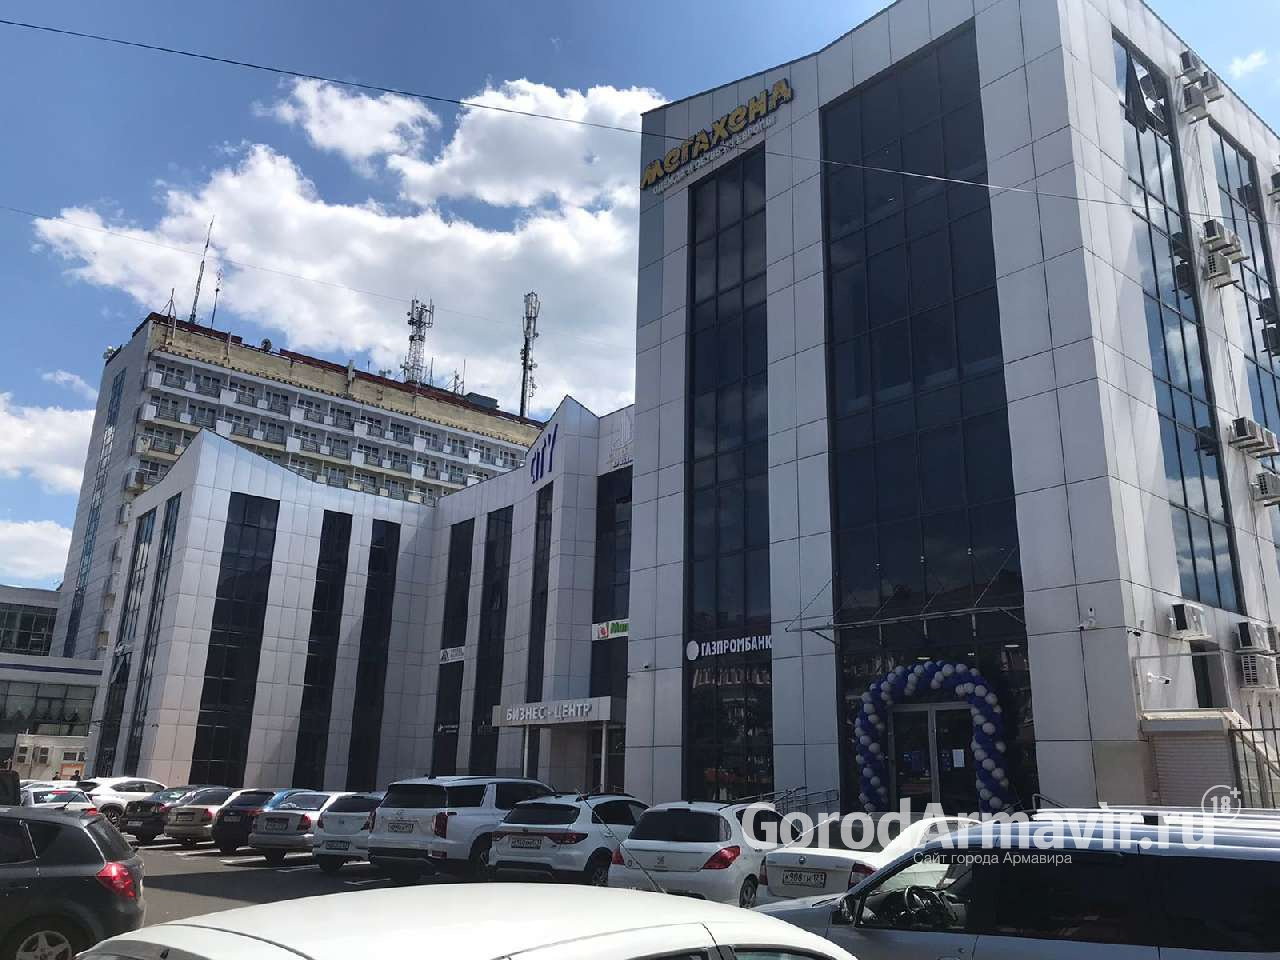 Офис Газпромбанка в Армавире открылся на улице Мира, 24 Б 